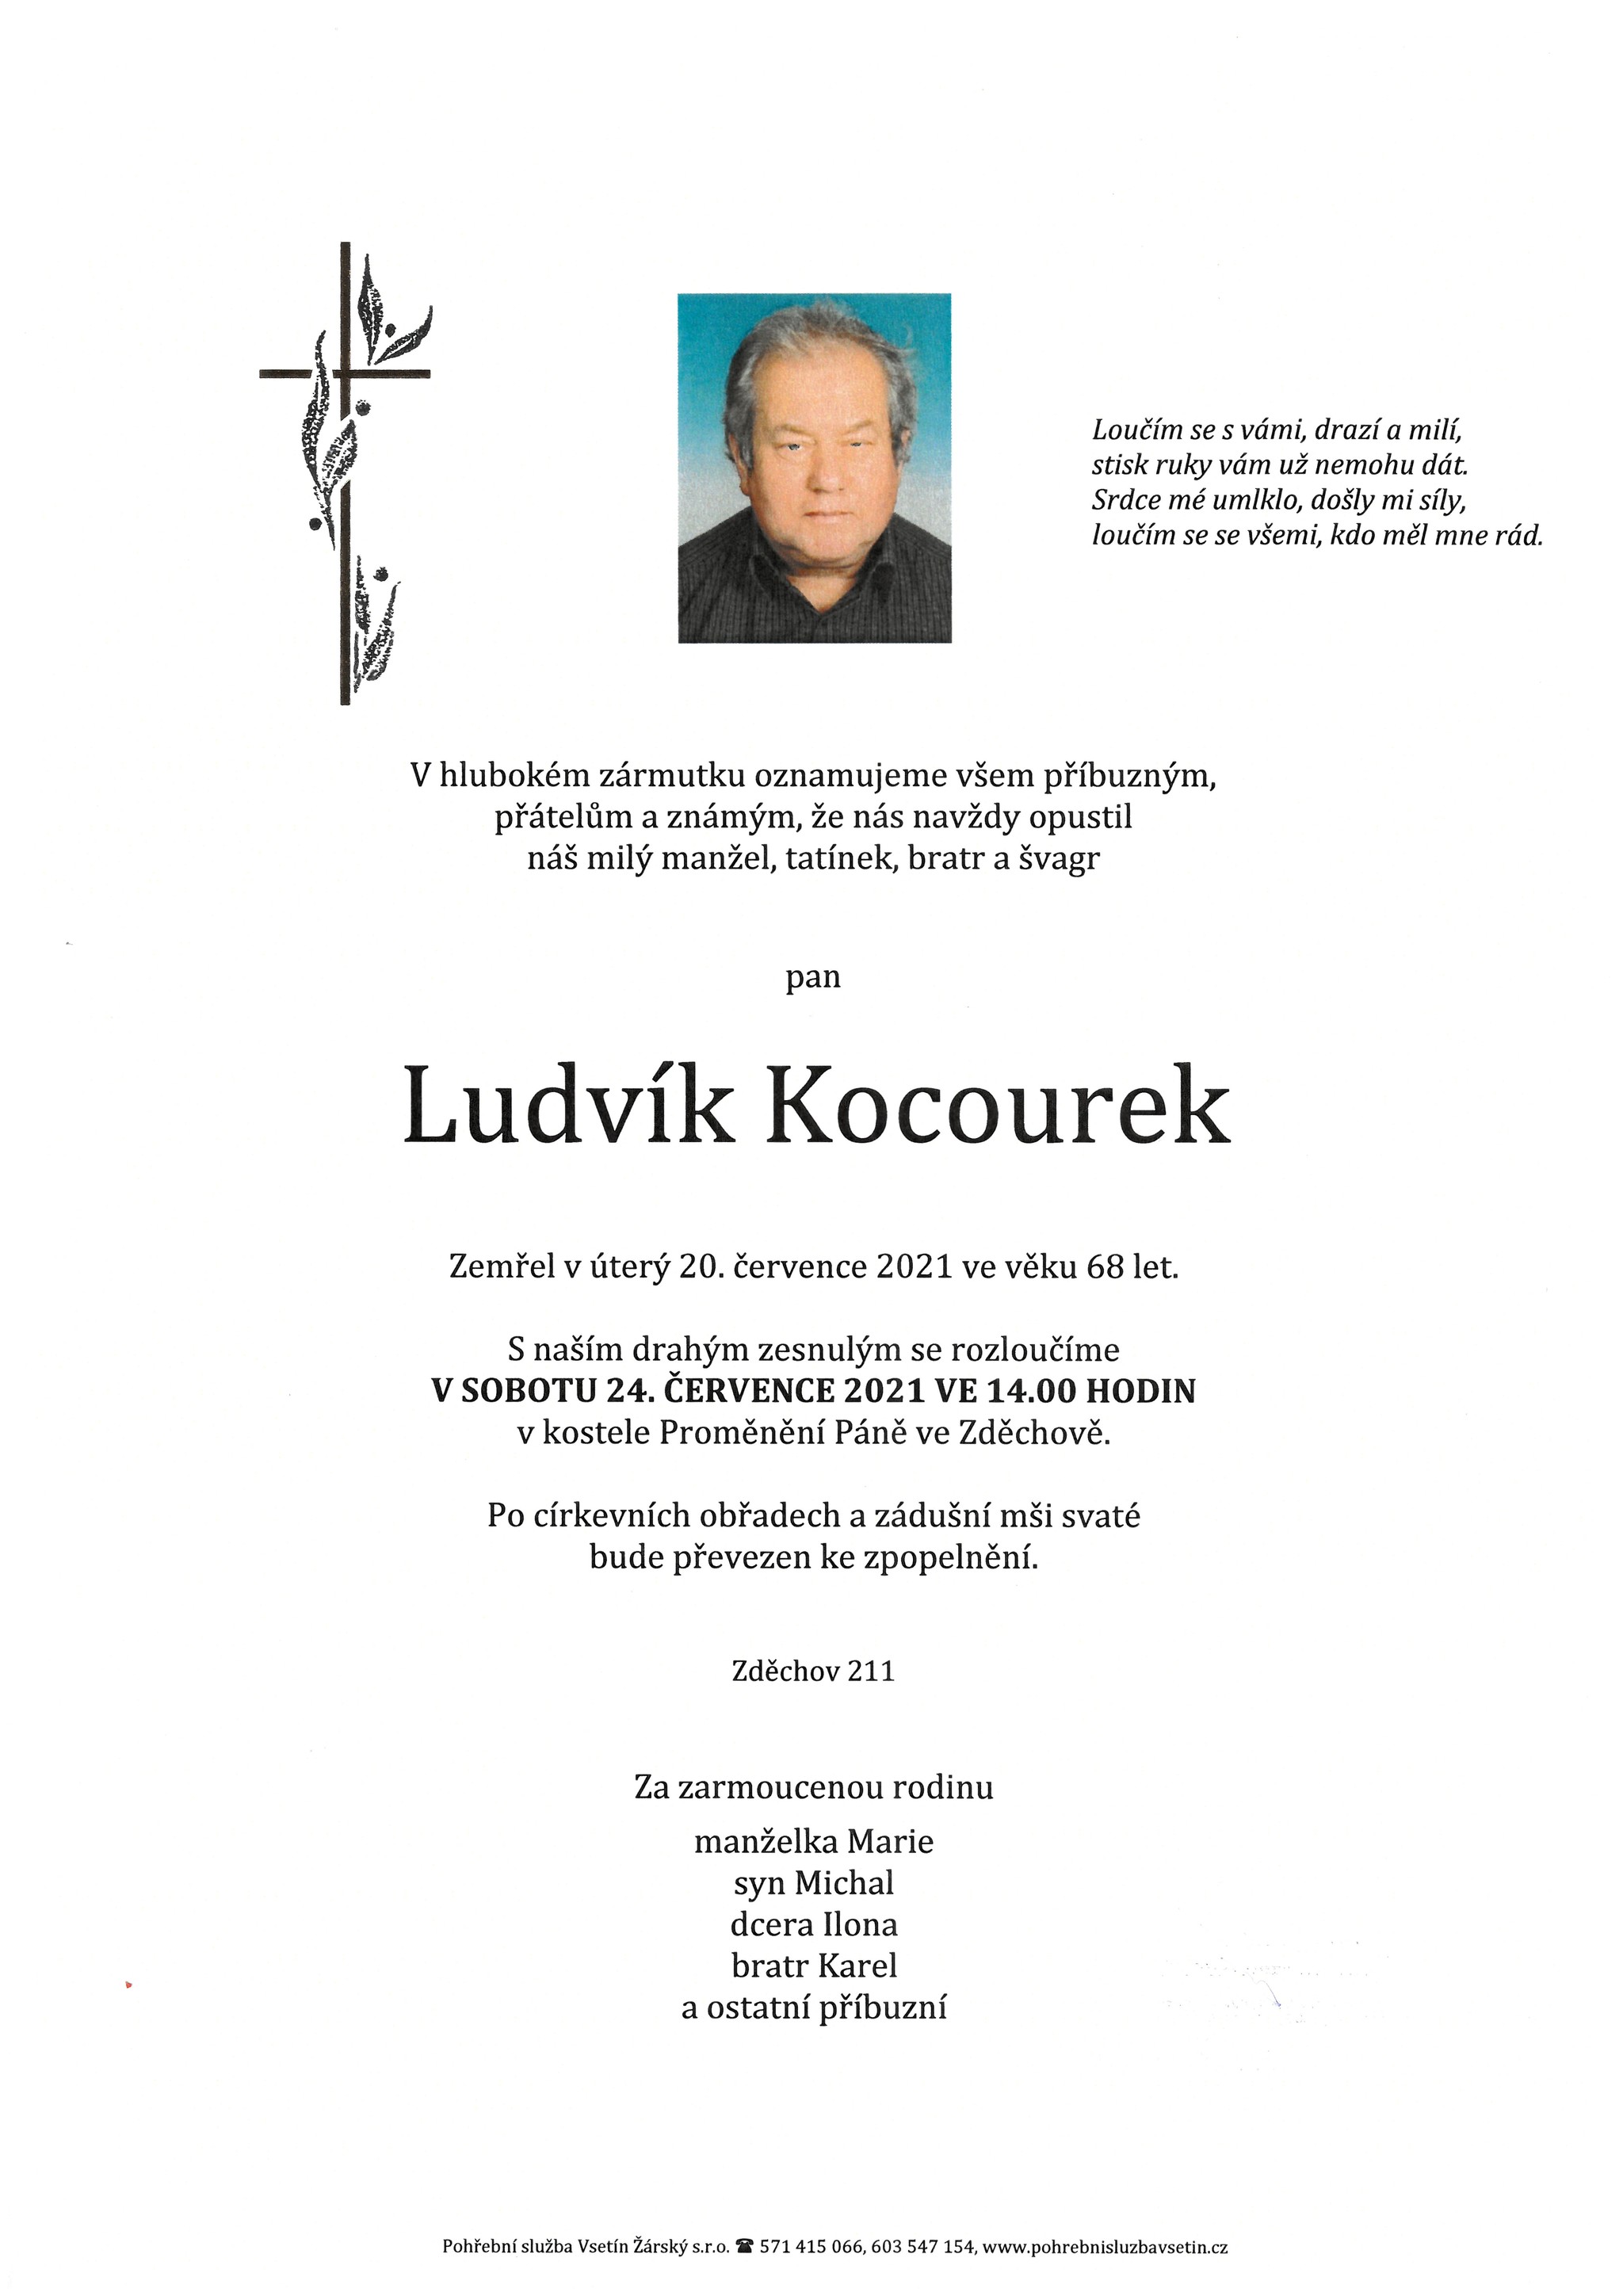 Ludvík Kocourek